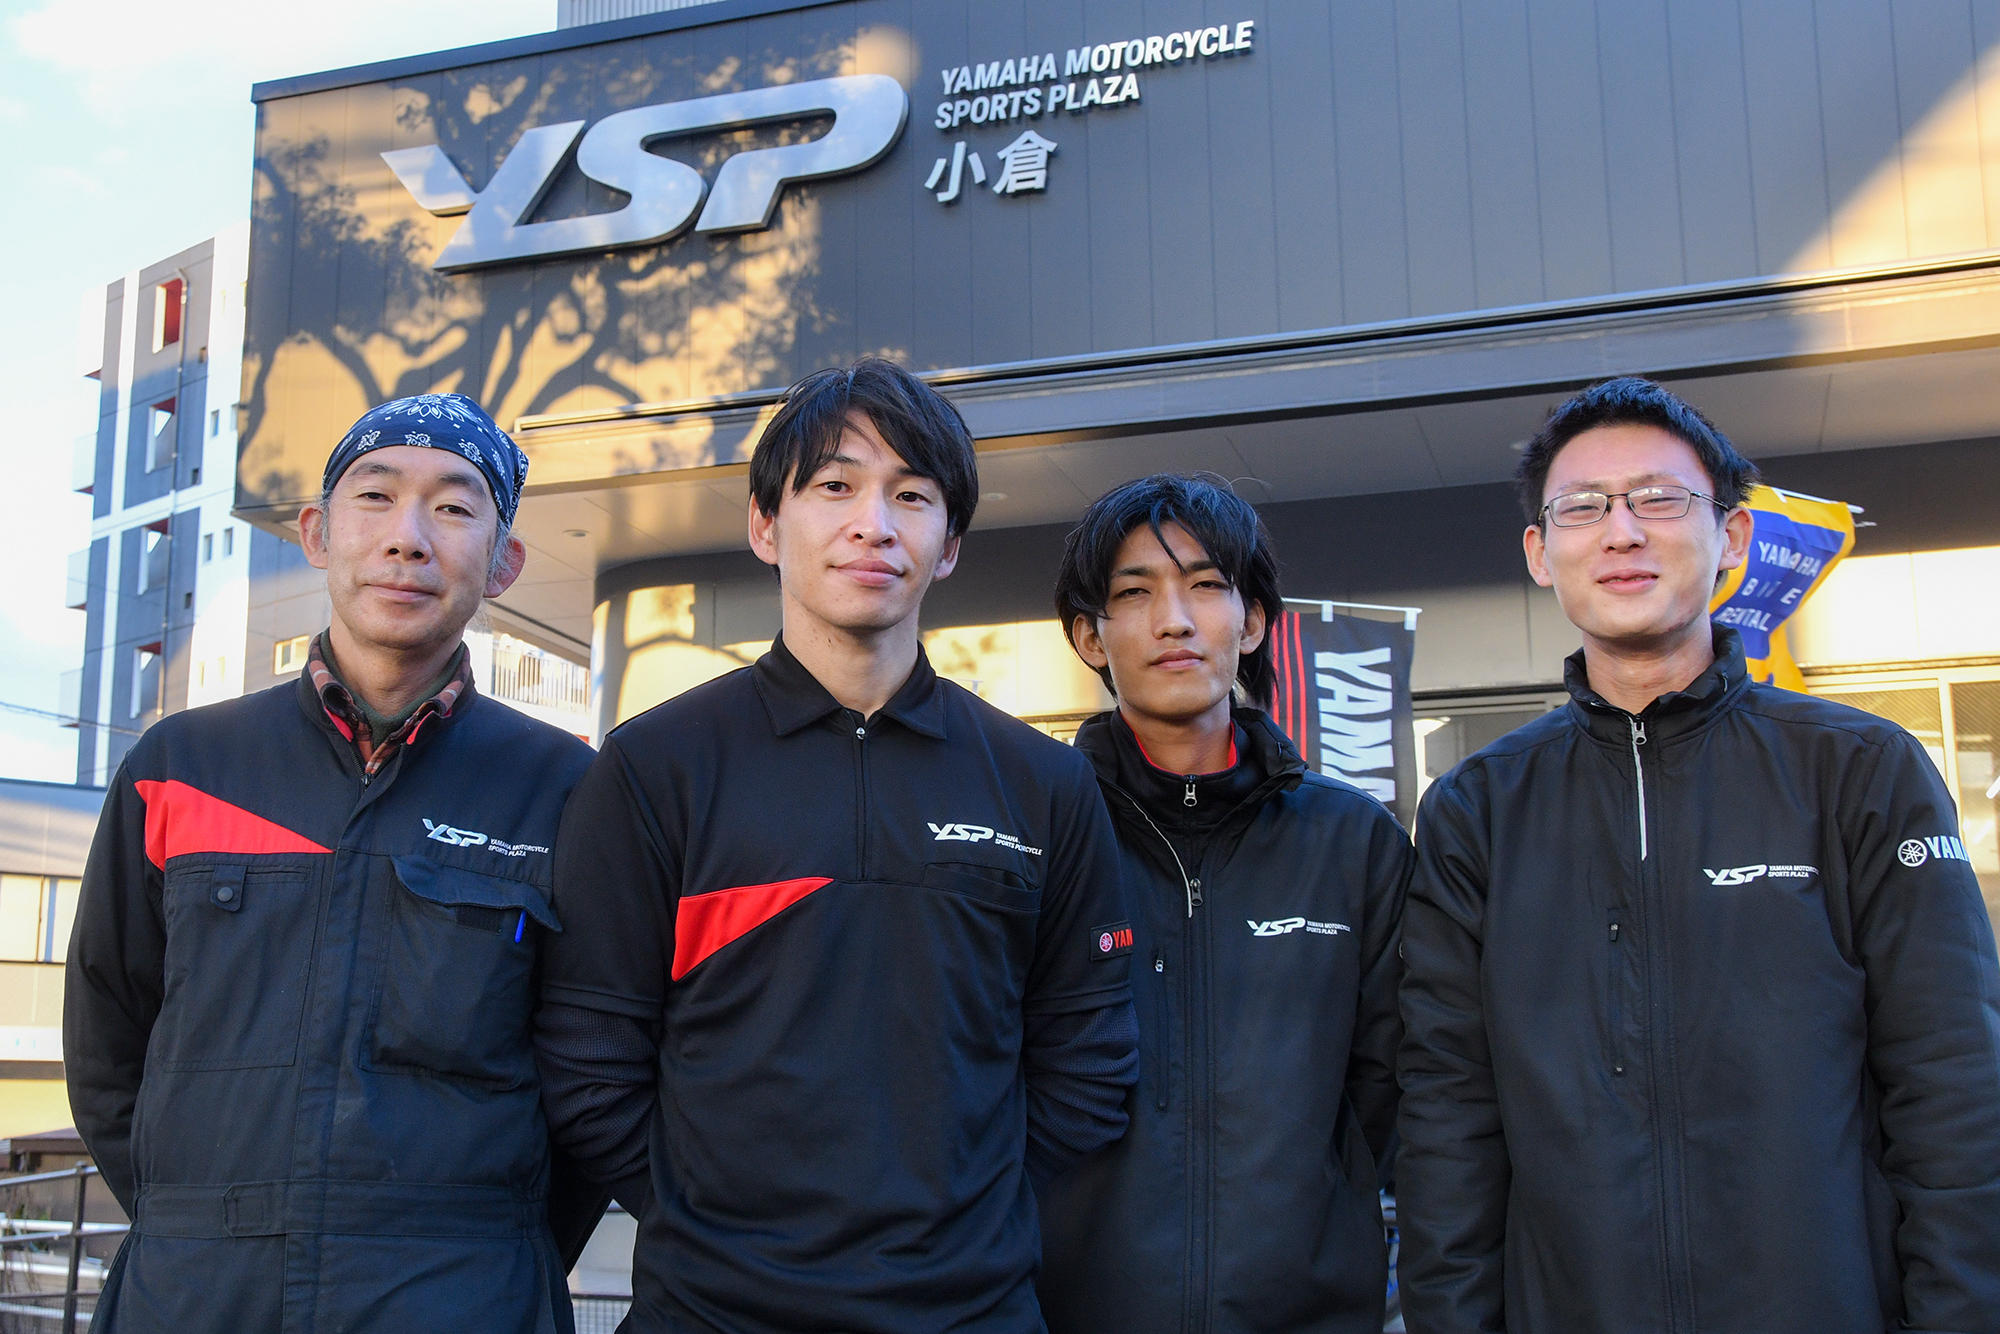 左から、工場長・森 傑さん、店長・森崎 雄貴さん、サービススタッフの増田 景介さんと上本 剛己さん